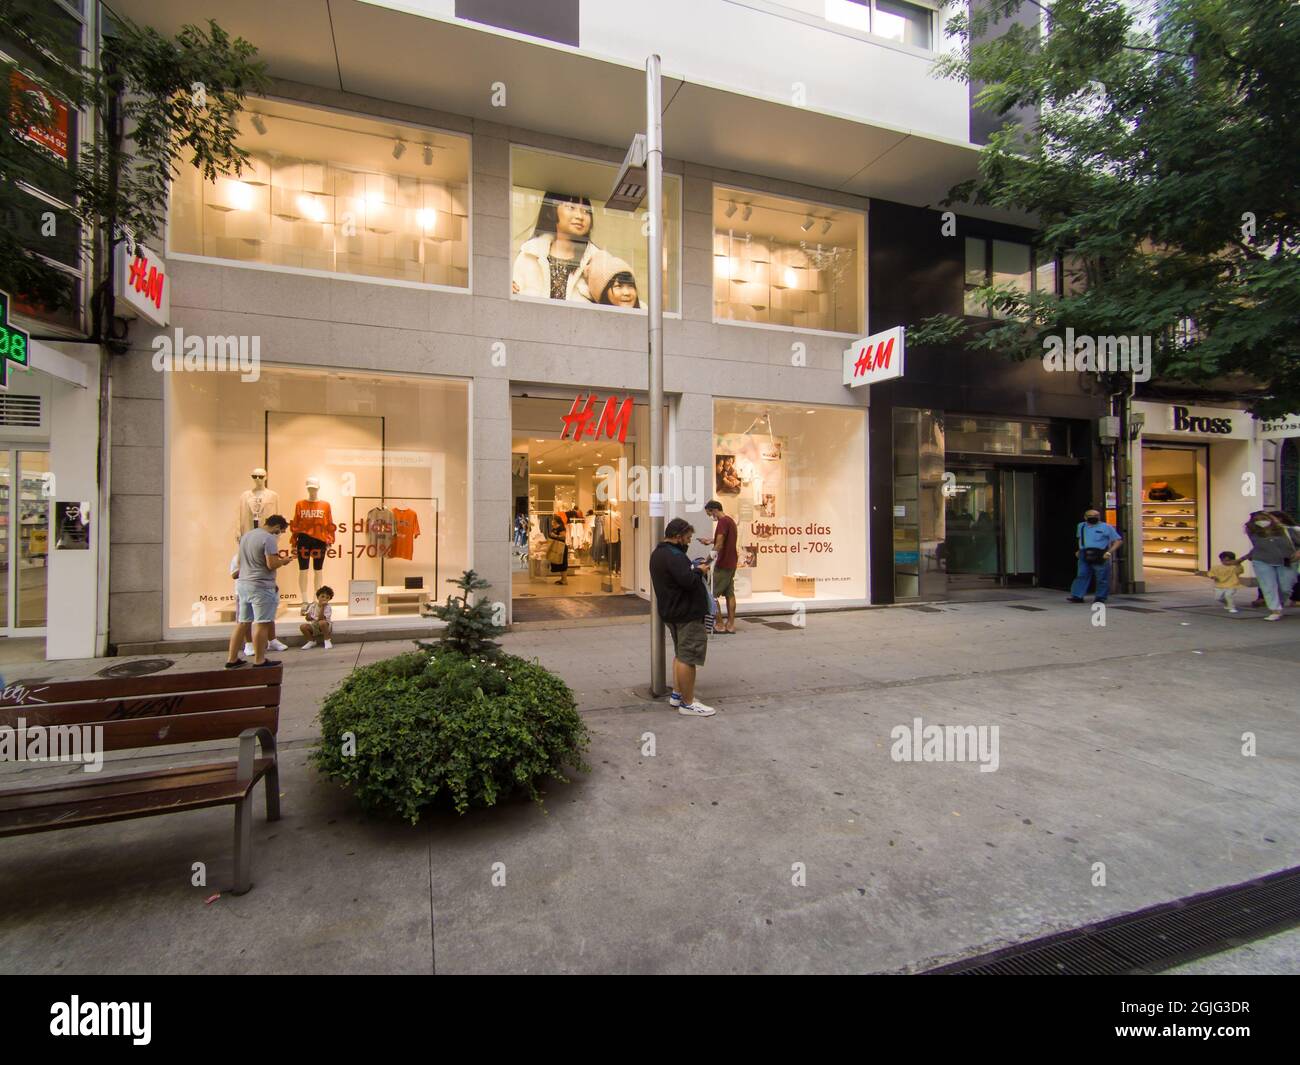 VIGO, SPAIN - Aug 23, 2021: The H&M store facade in Vigo, Spain Stock Photo  - Alamy